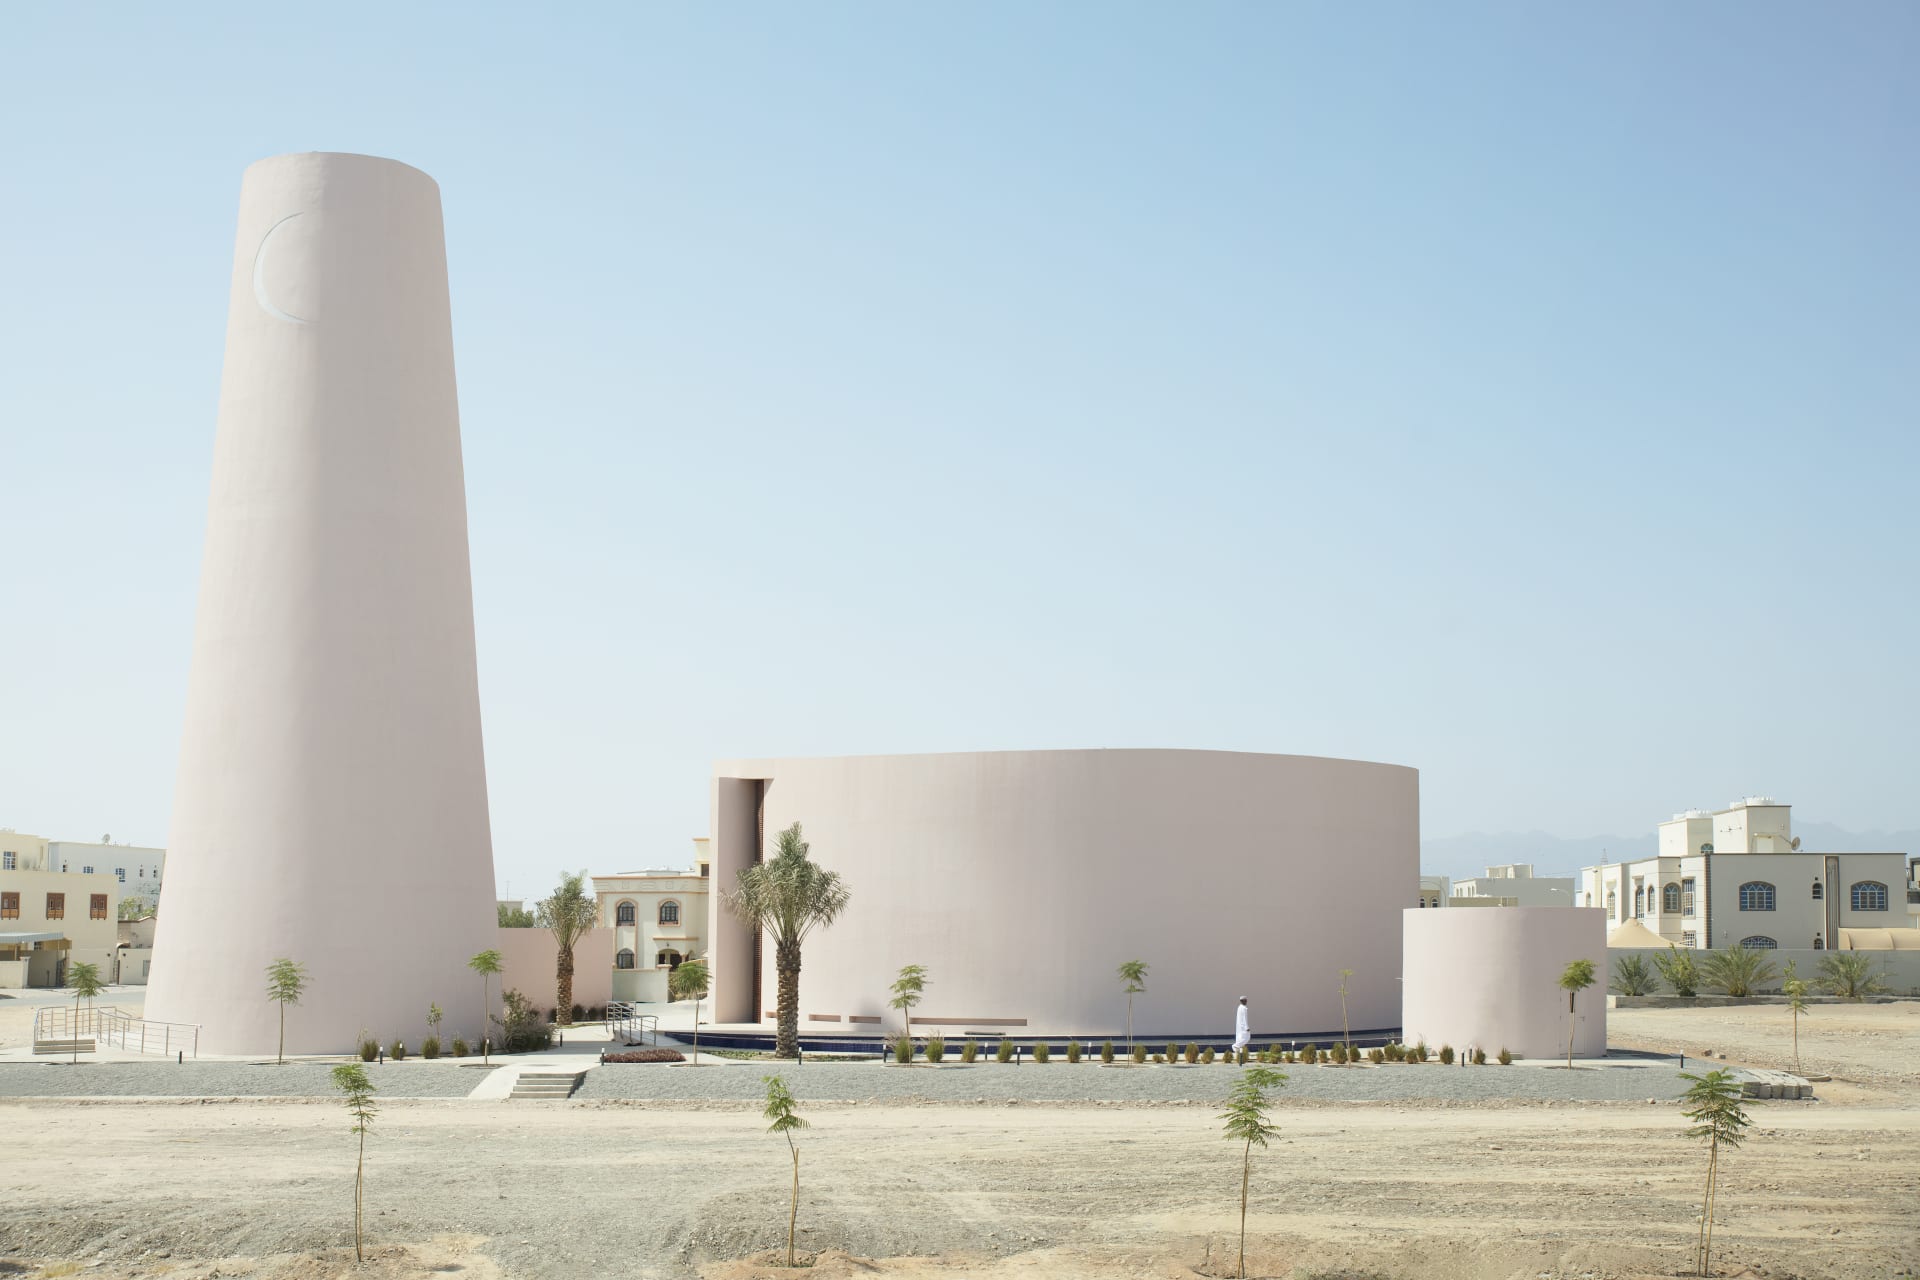 يتمتع بتصميم انسيابي ومدروس.. كيف يعود هذا المبنى الأنيق في سلطنة عُمان إلى "أصل المساجد"؟